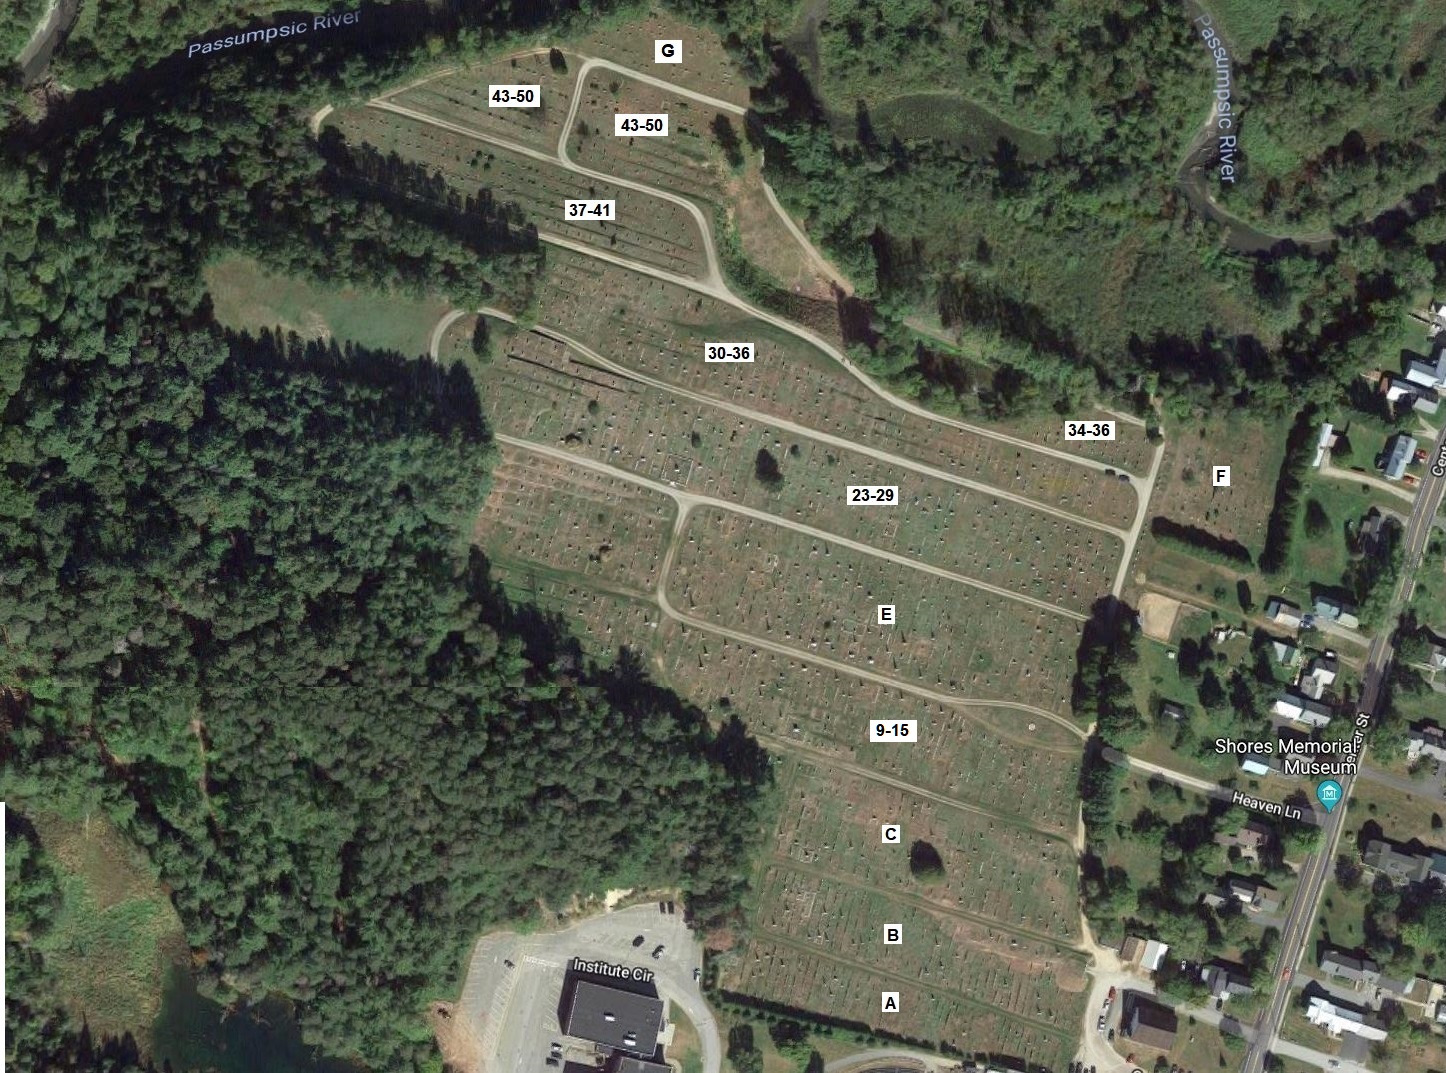  Lyndon Center Cemetery Map